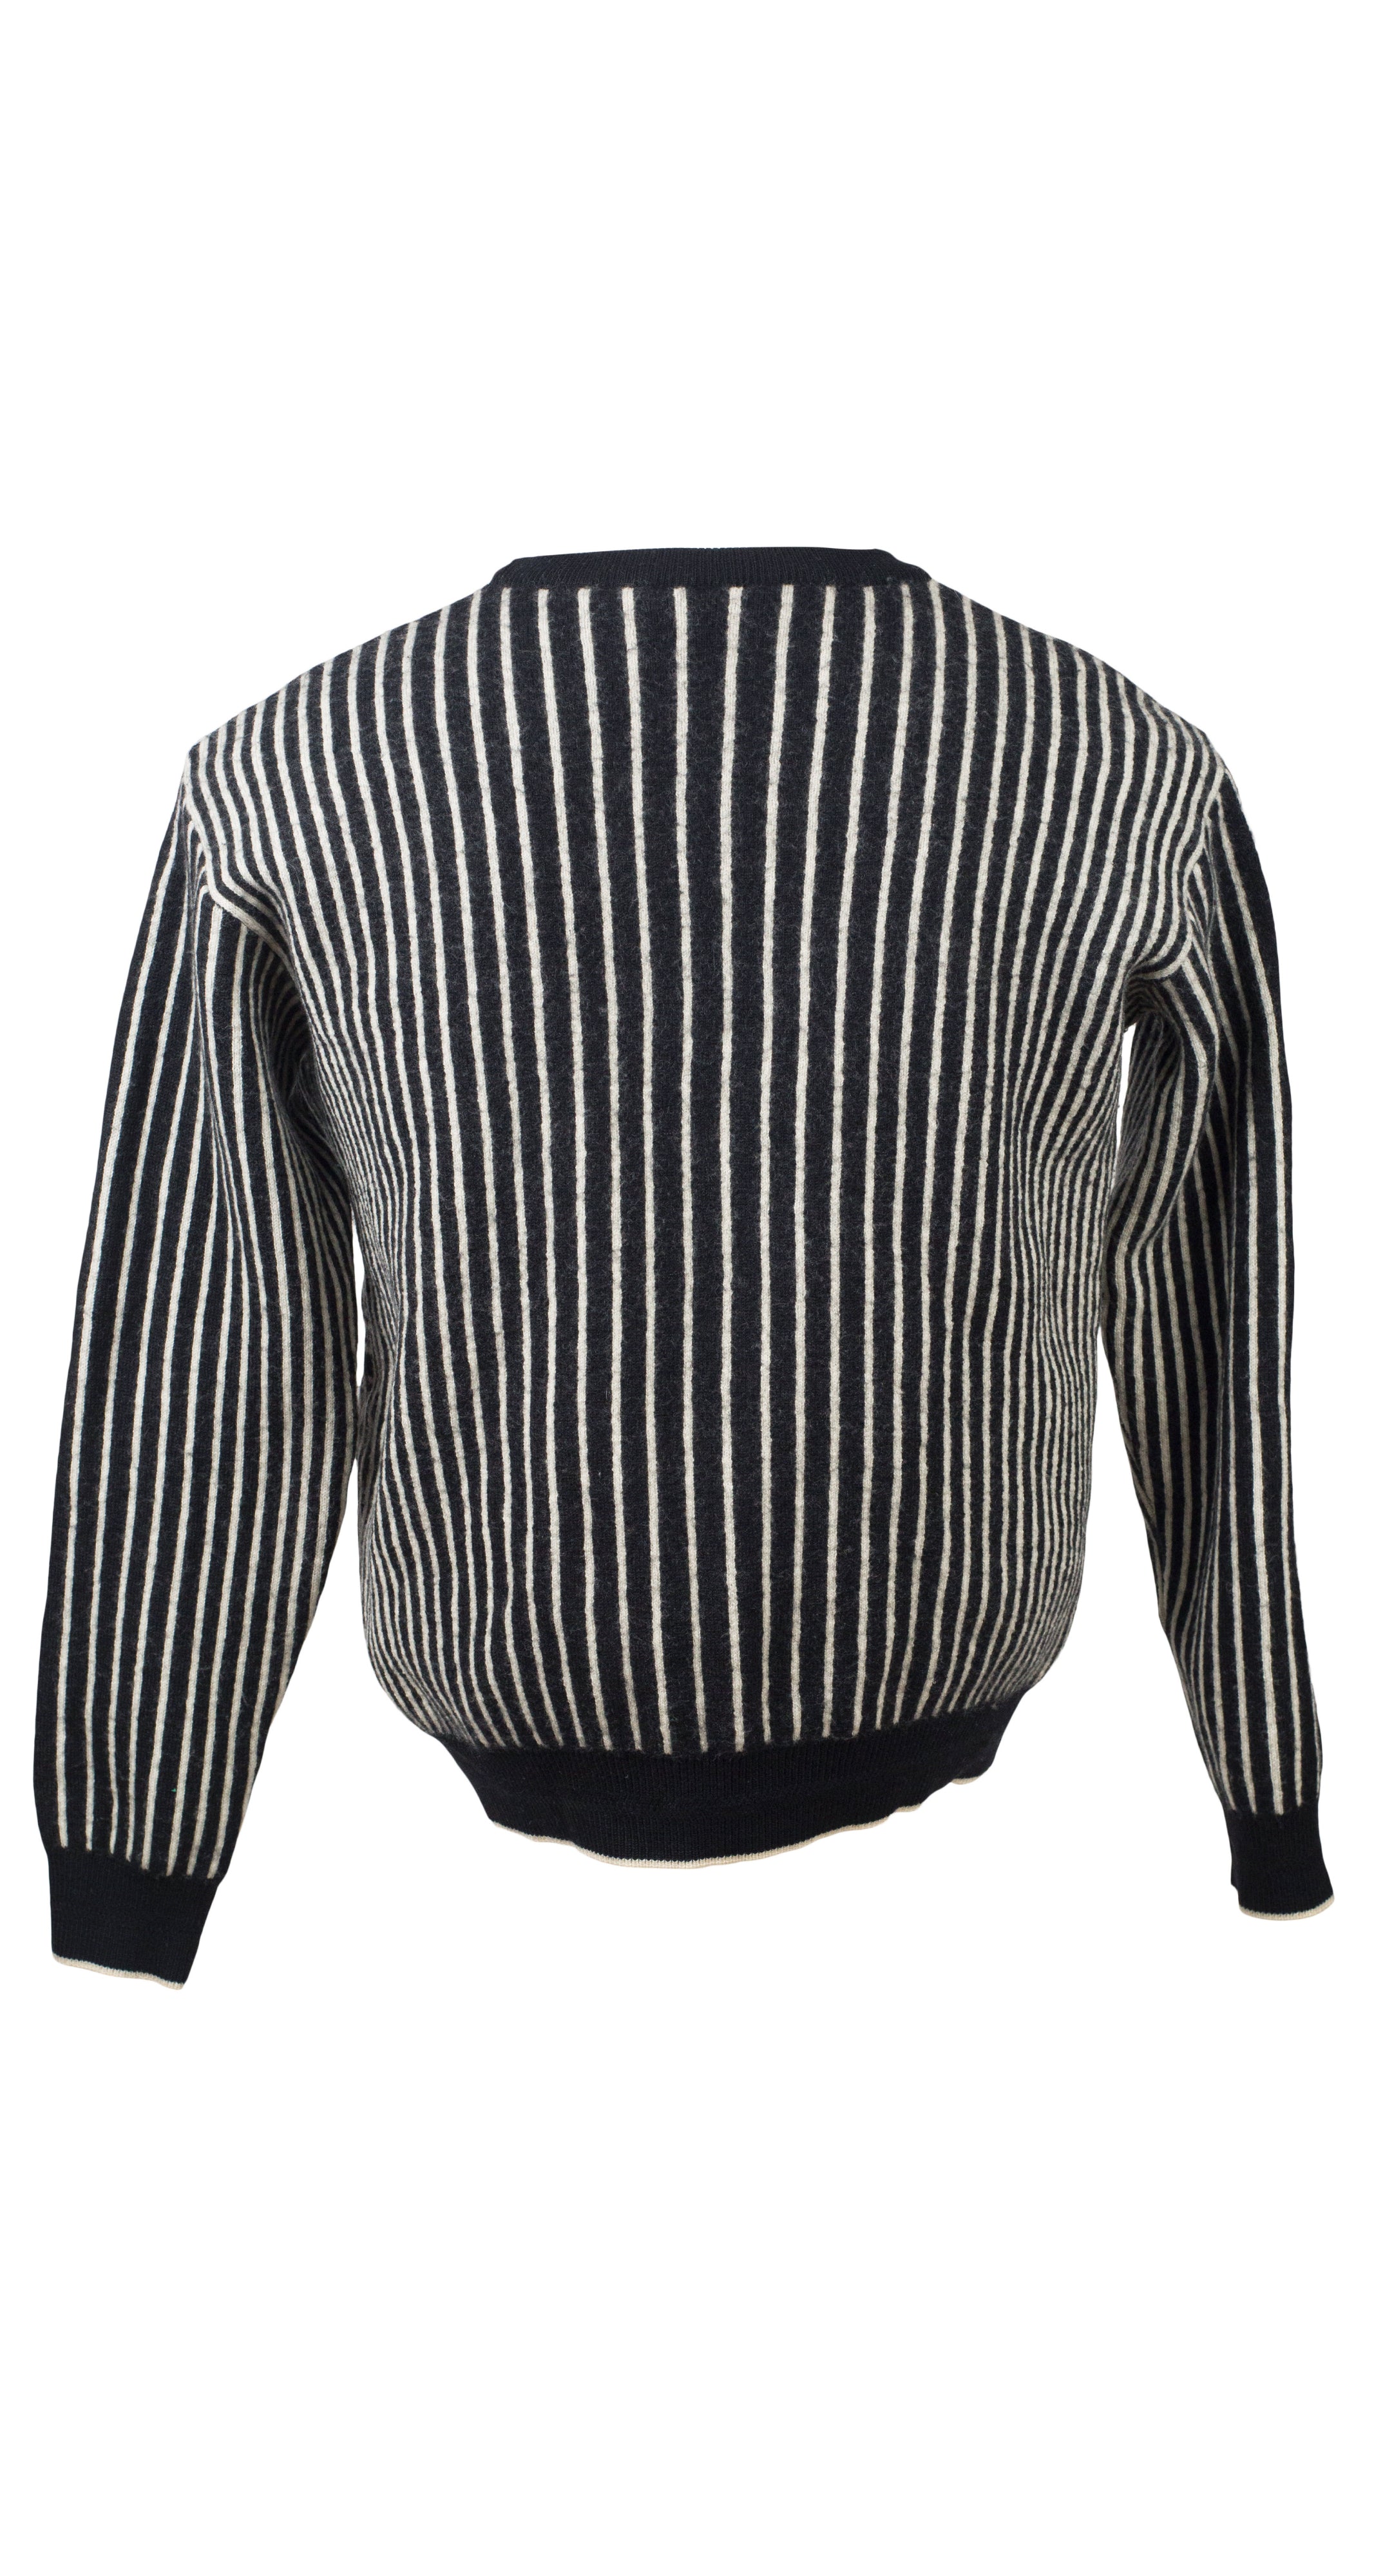 1980s Op Art Monochrome Wool Emblem Sweater